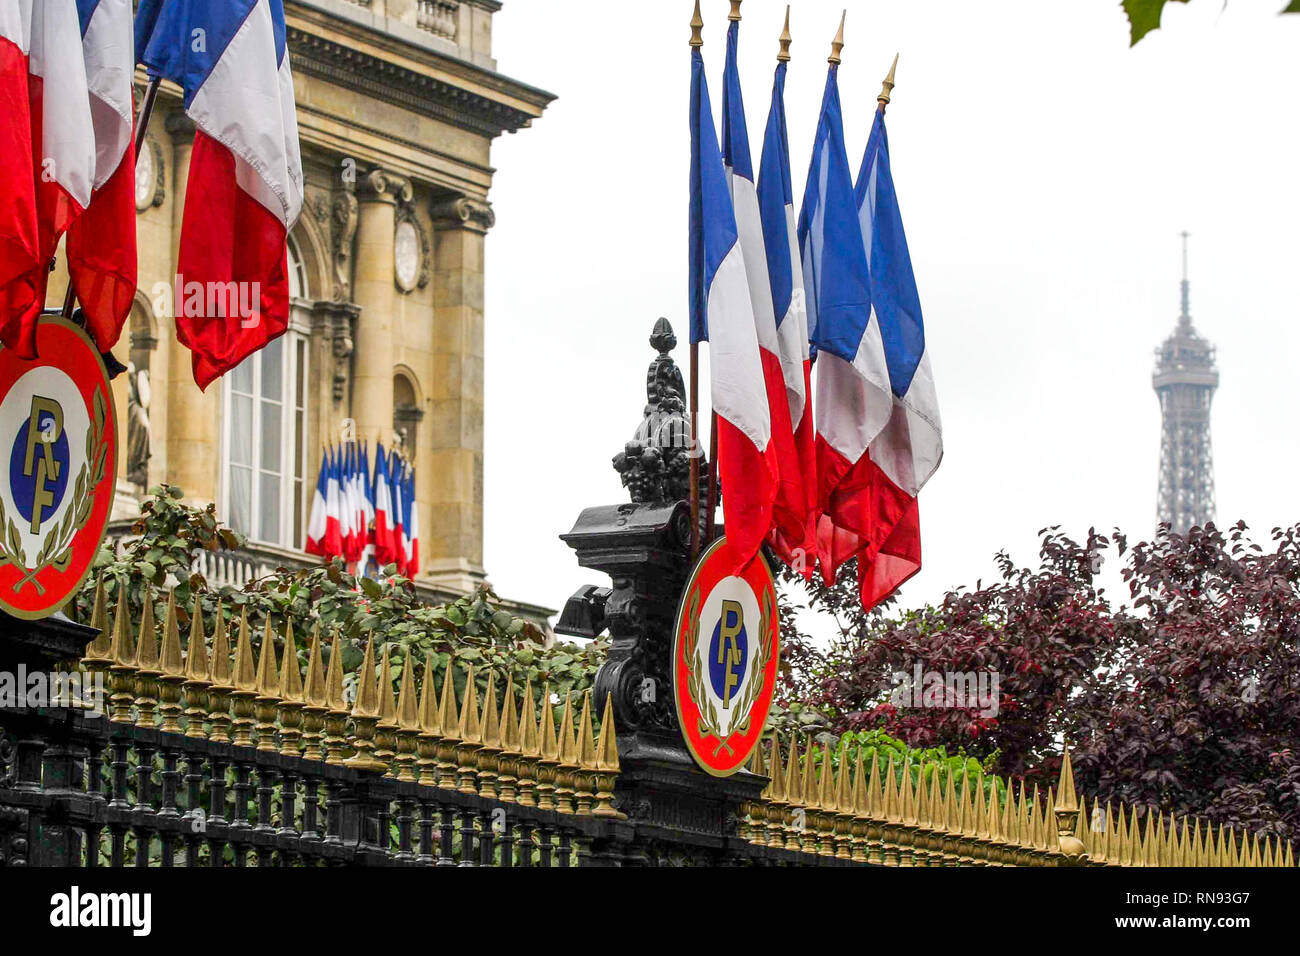 Cocarde tricolore, Parigi, Francia Foto stock - Alamy